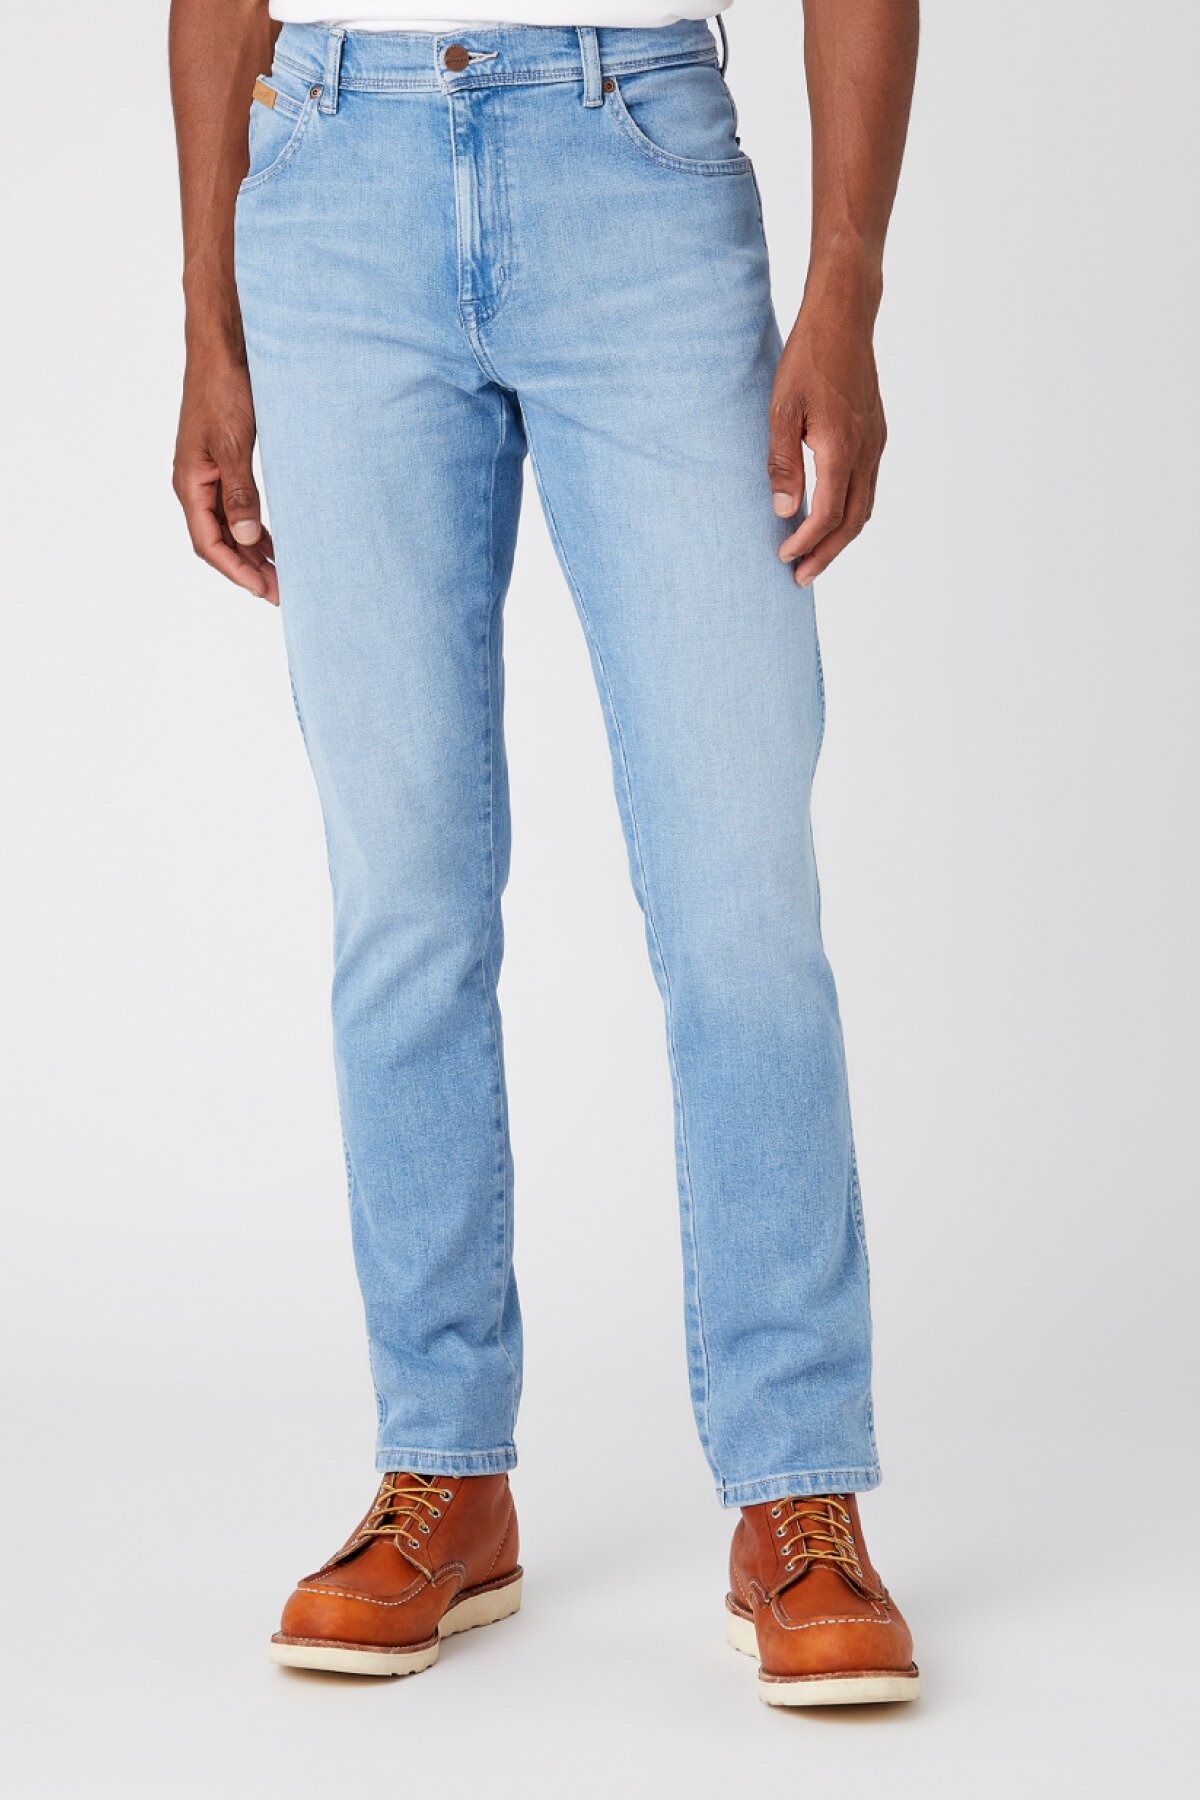 Джинсы мужские Wrangler Texas Slim Jeans голубые 54